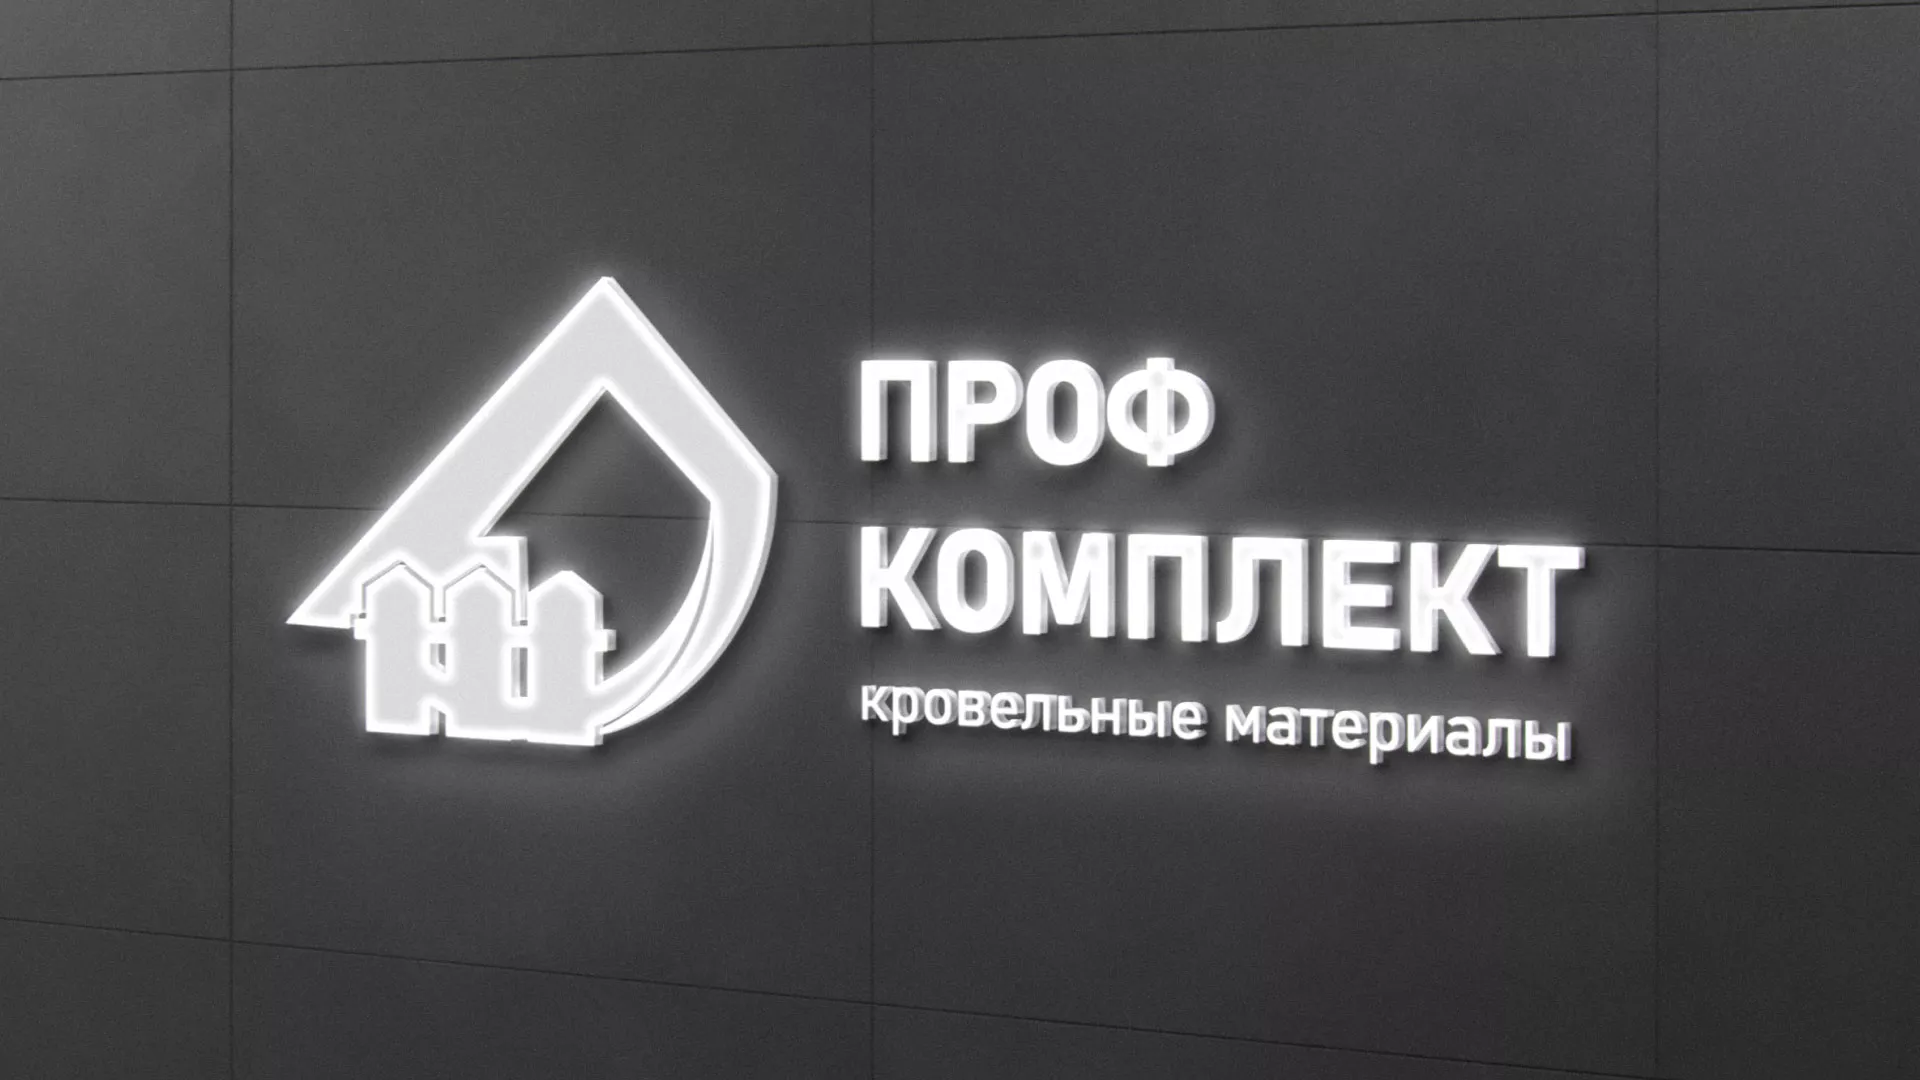 Разработка логотипа «Проф Комплект» в Пошехонье